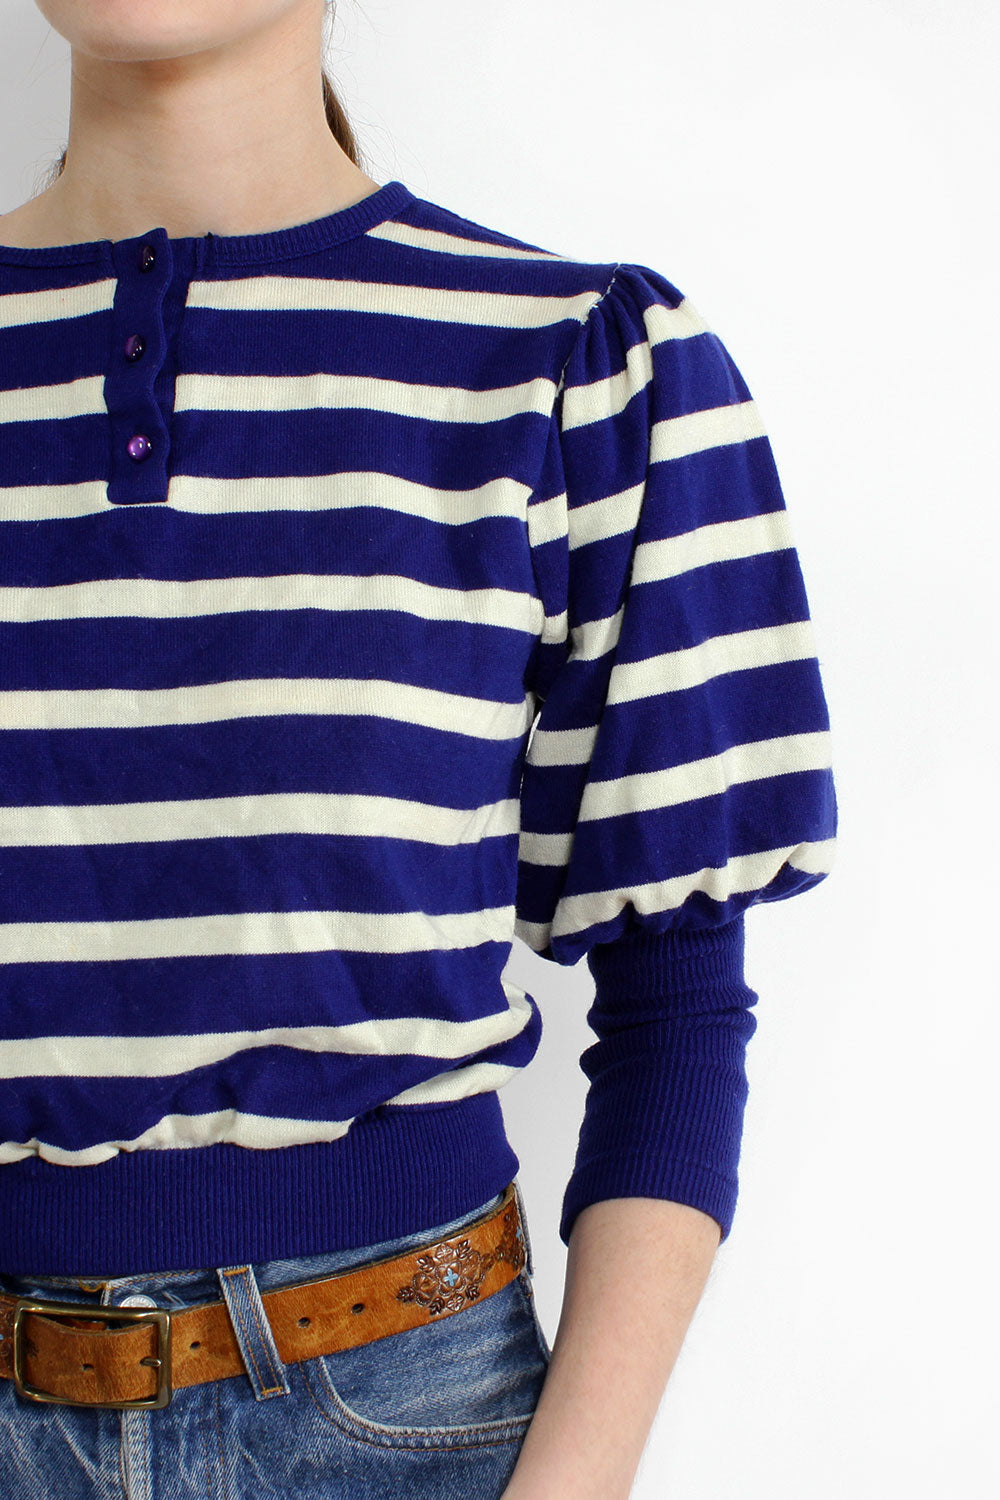 Striped Puff Sweater S/M